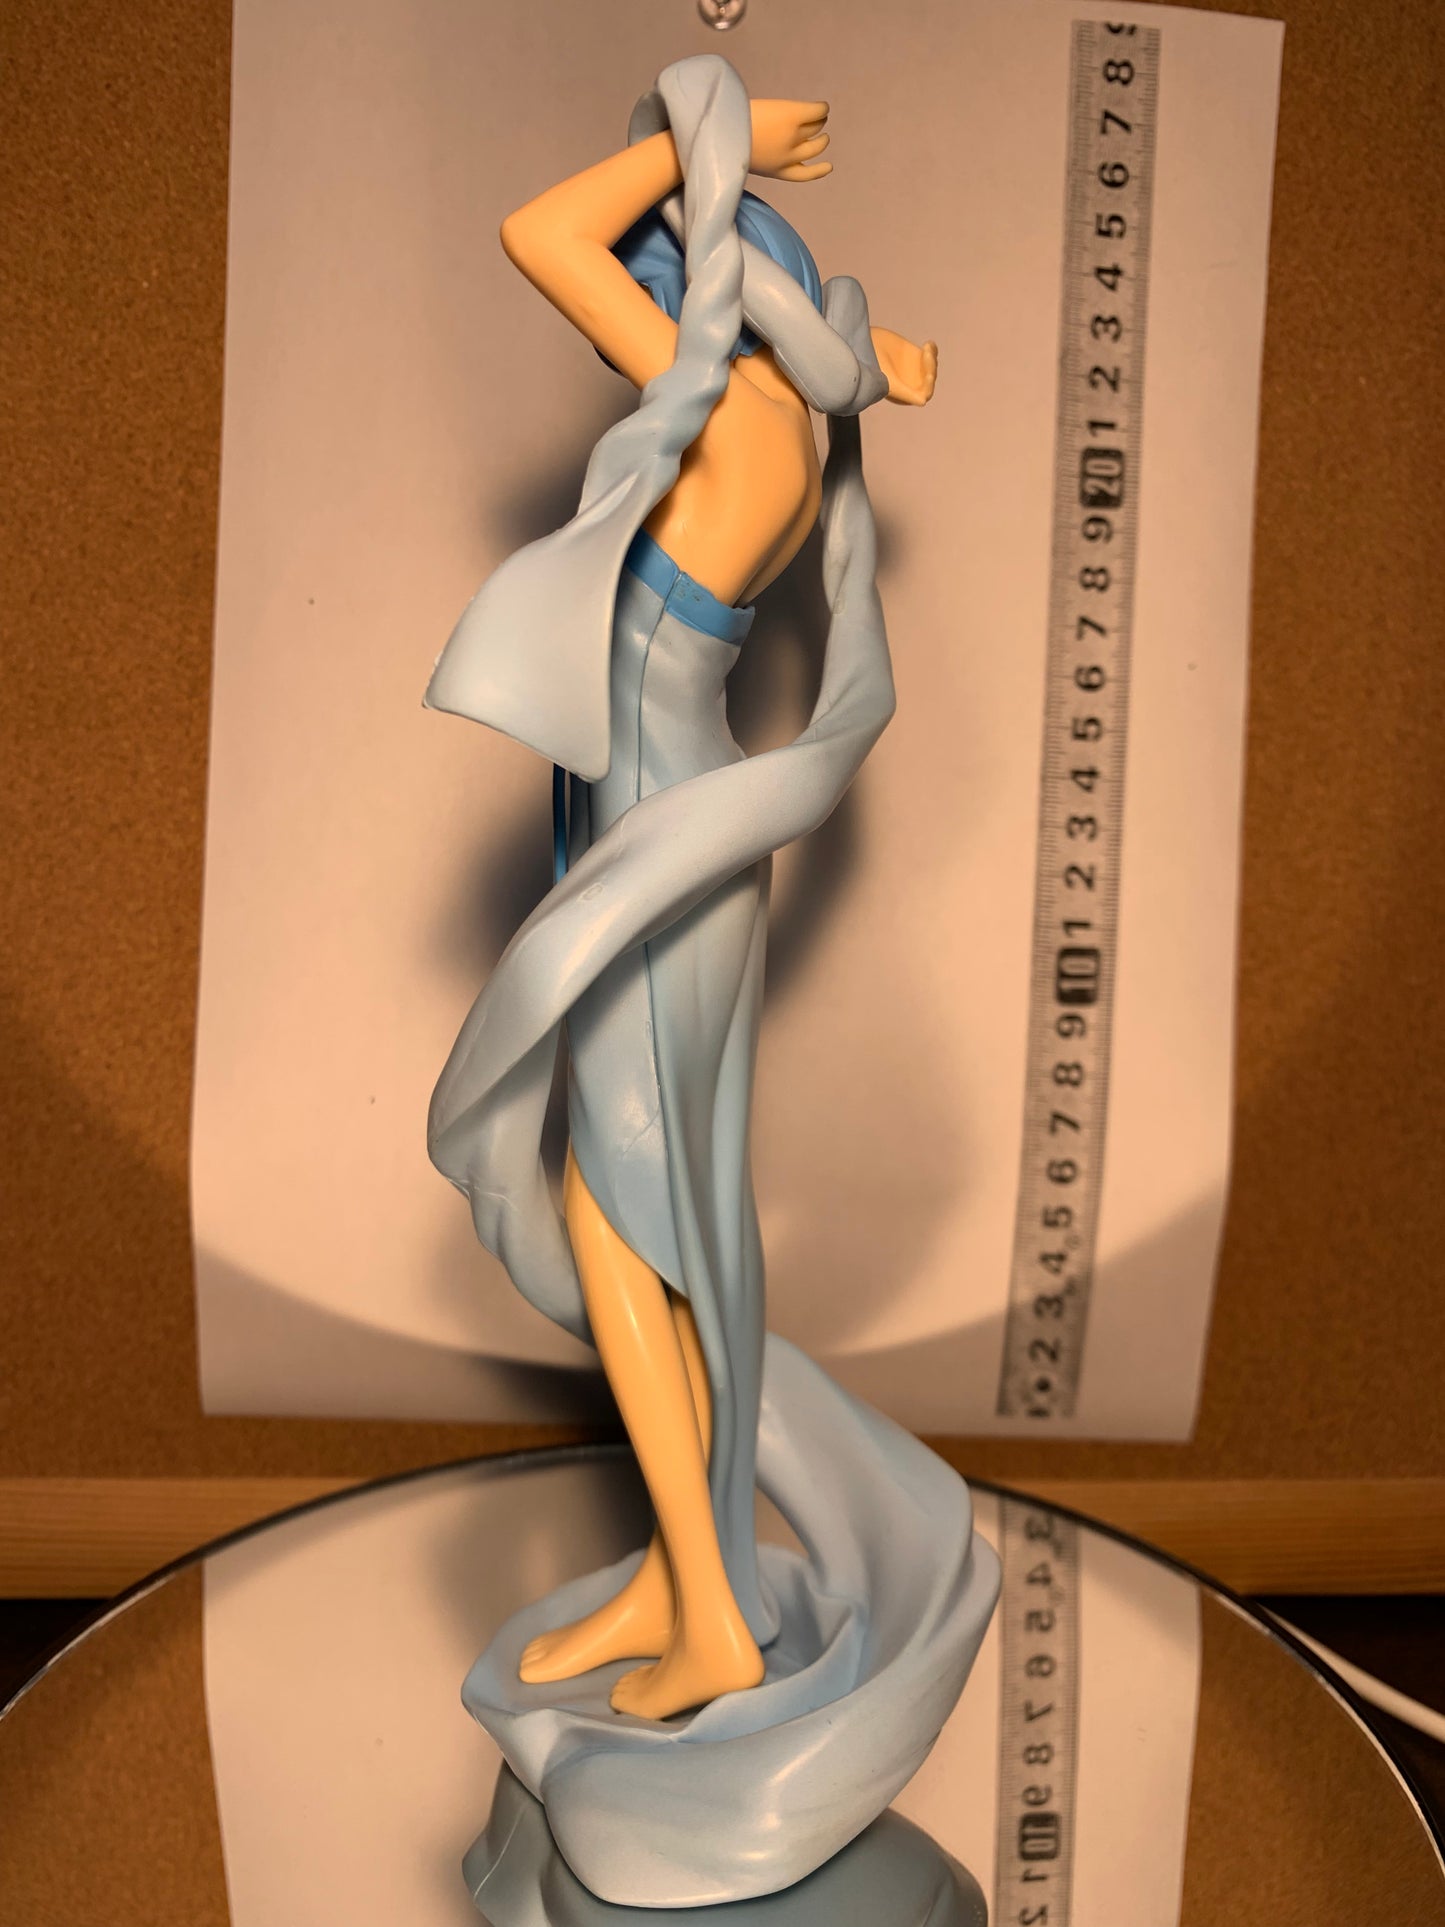 Neon Genesis Evangelion Figure Extra Aphrodite 20 cm Rei Ayanami Blue SEGA 2005 #124